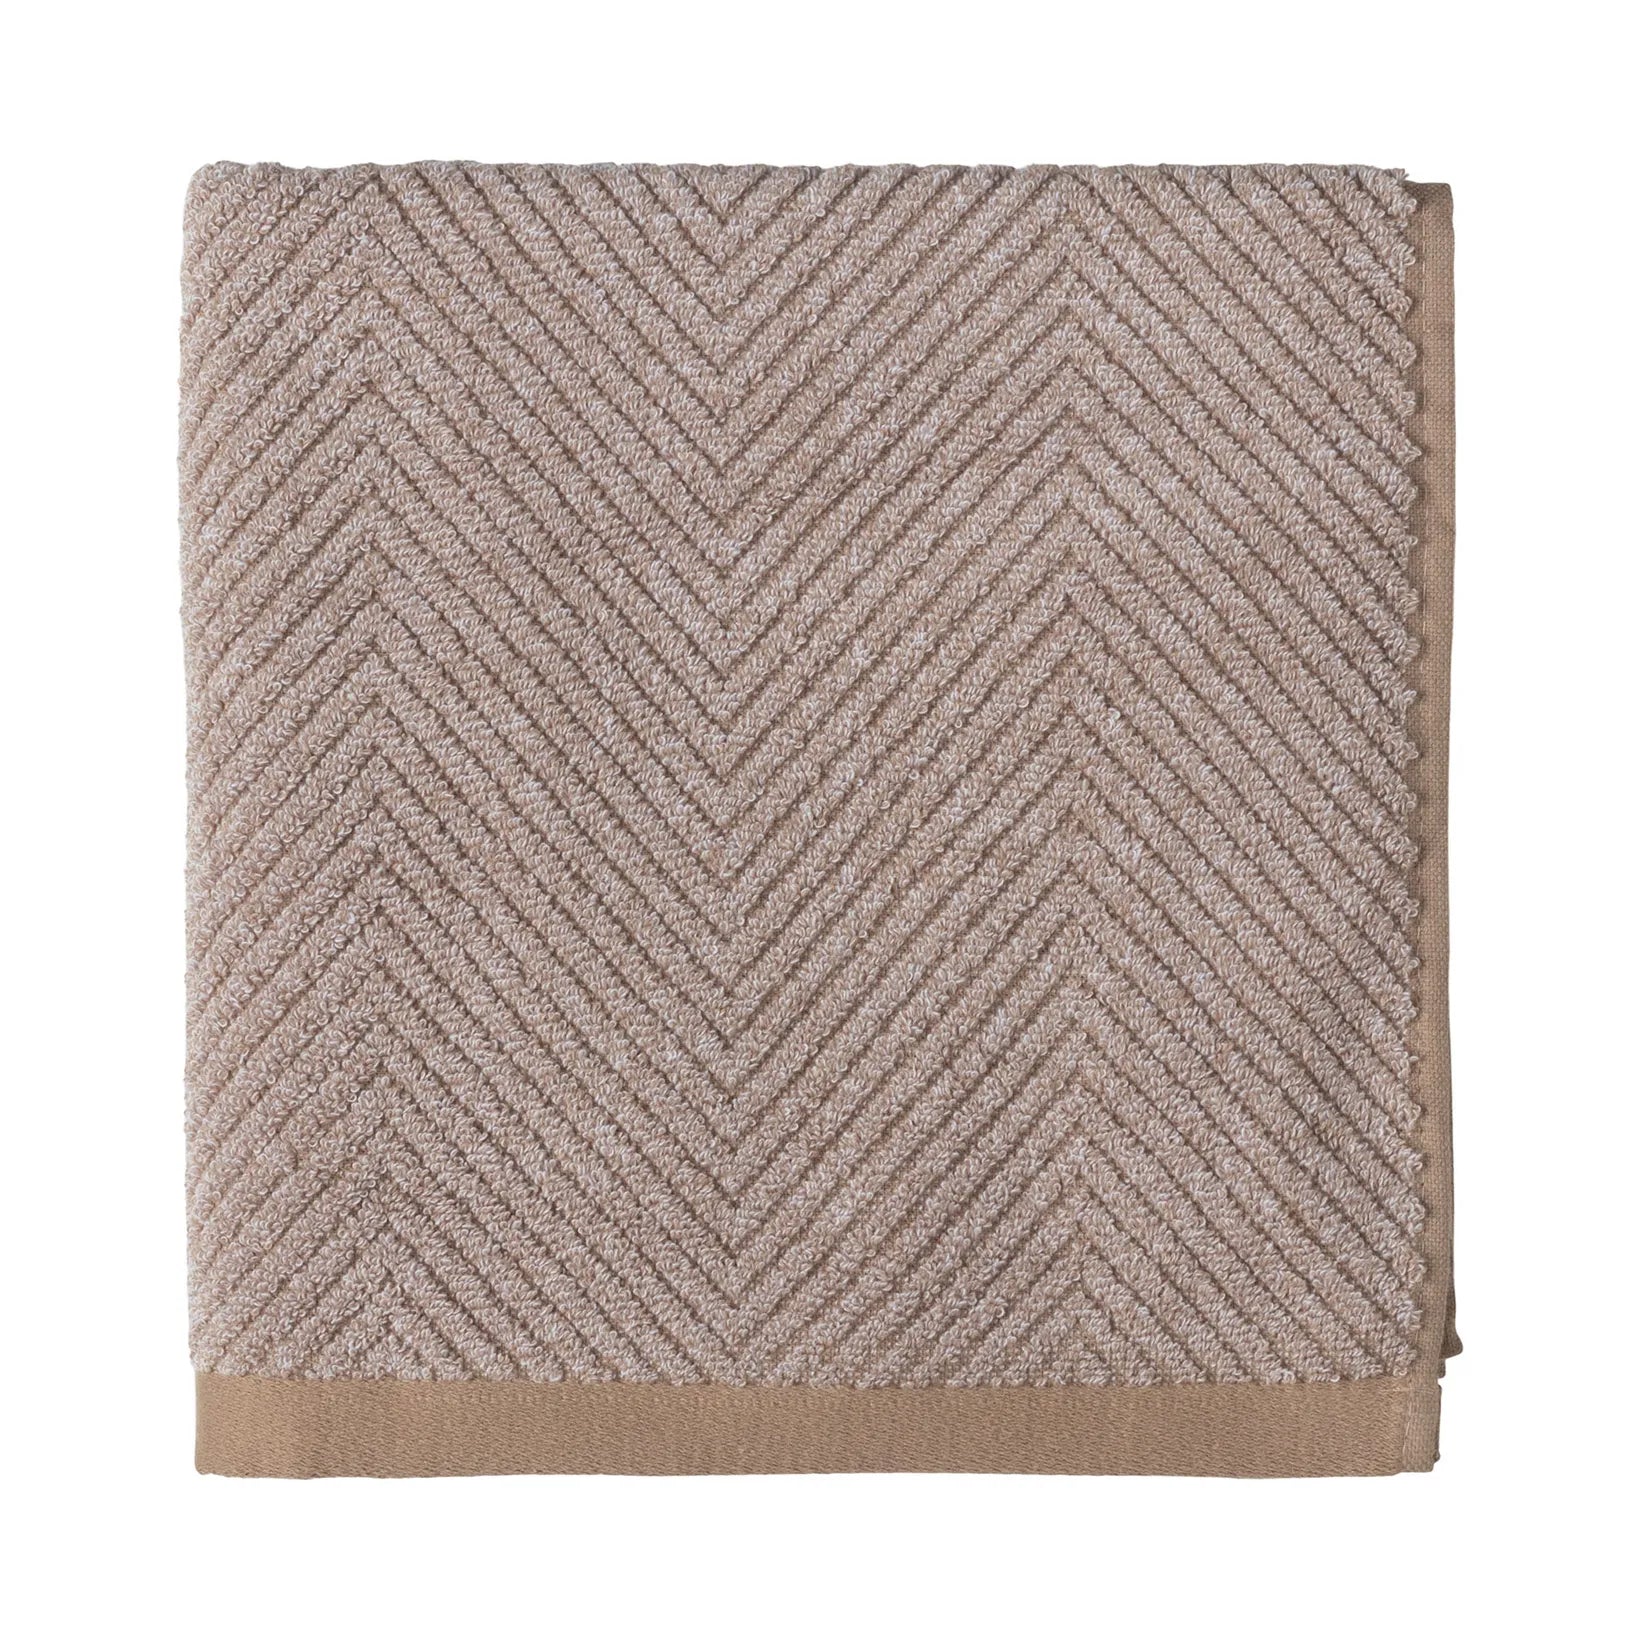 Twisted Handtuch Braun 50 x 100 cm - Braun - Sinnerup von Sinnerup